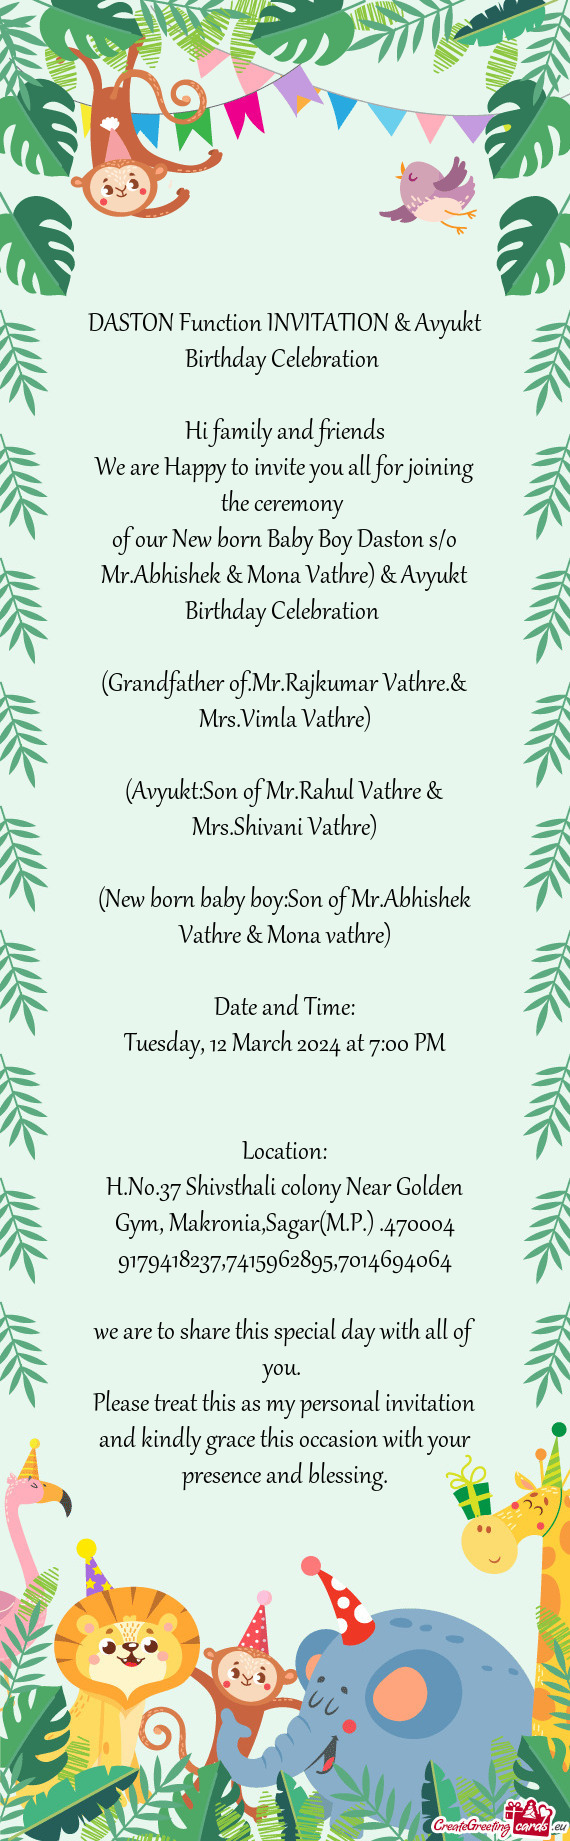 Of our New born Baby Boy Daston s/o Mr.Abhishek & Mona Vathre) & Avyukt Birthday Celebration